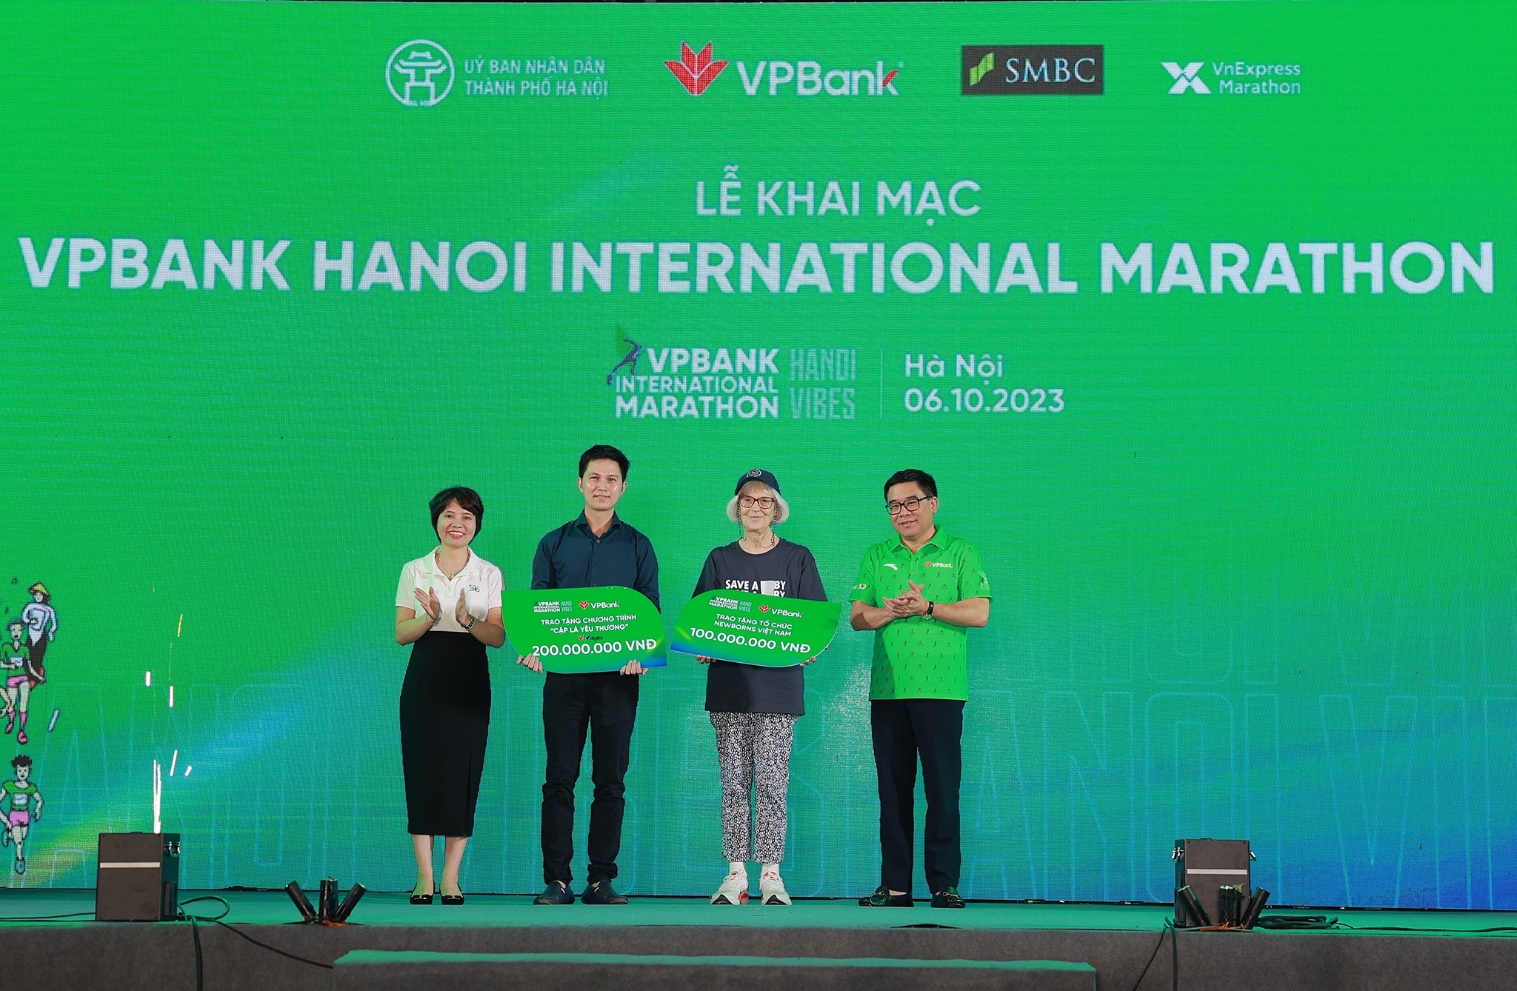 VPBank Hanoi International Marathon 2023: Giải chạy có hệ thống giải thưởng tiền mặt lớn nhất từ trước đến nay - Ảnh 2.